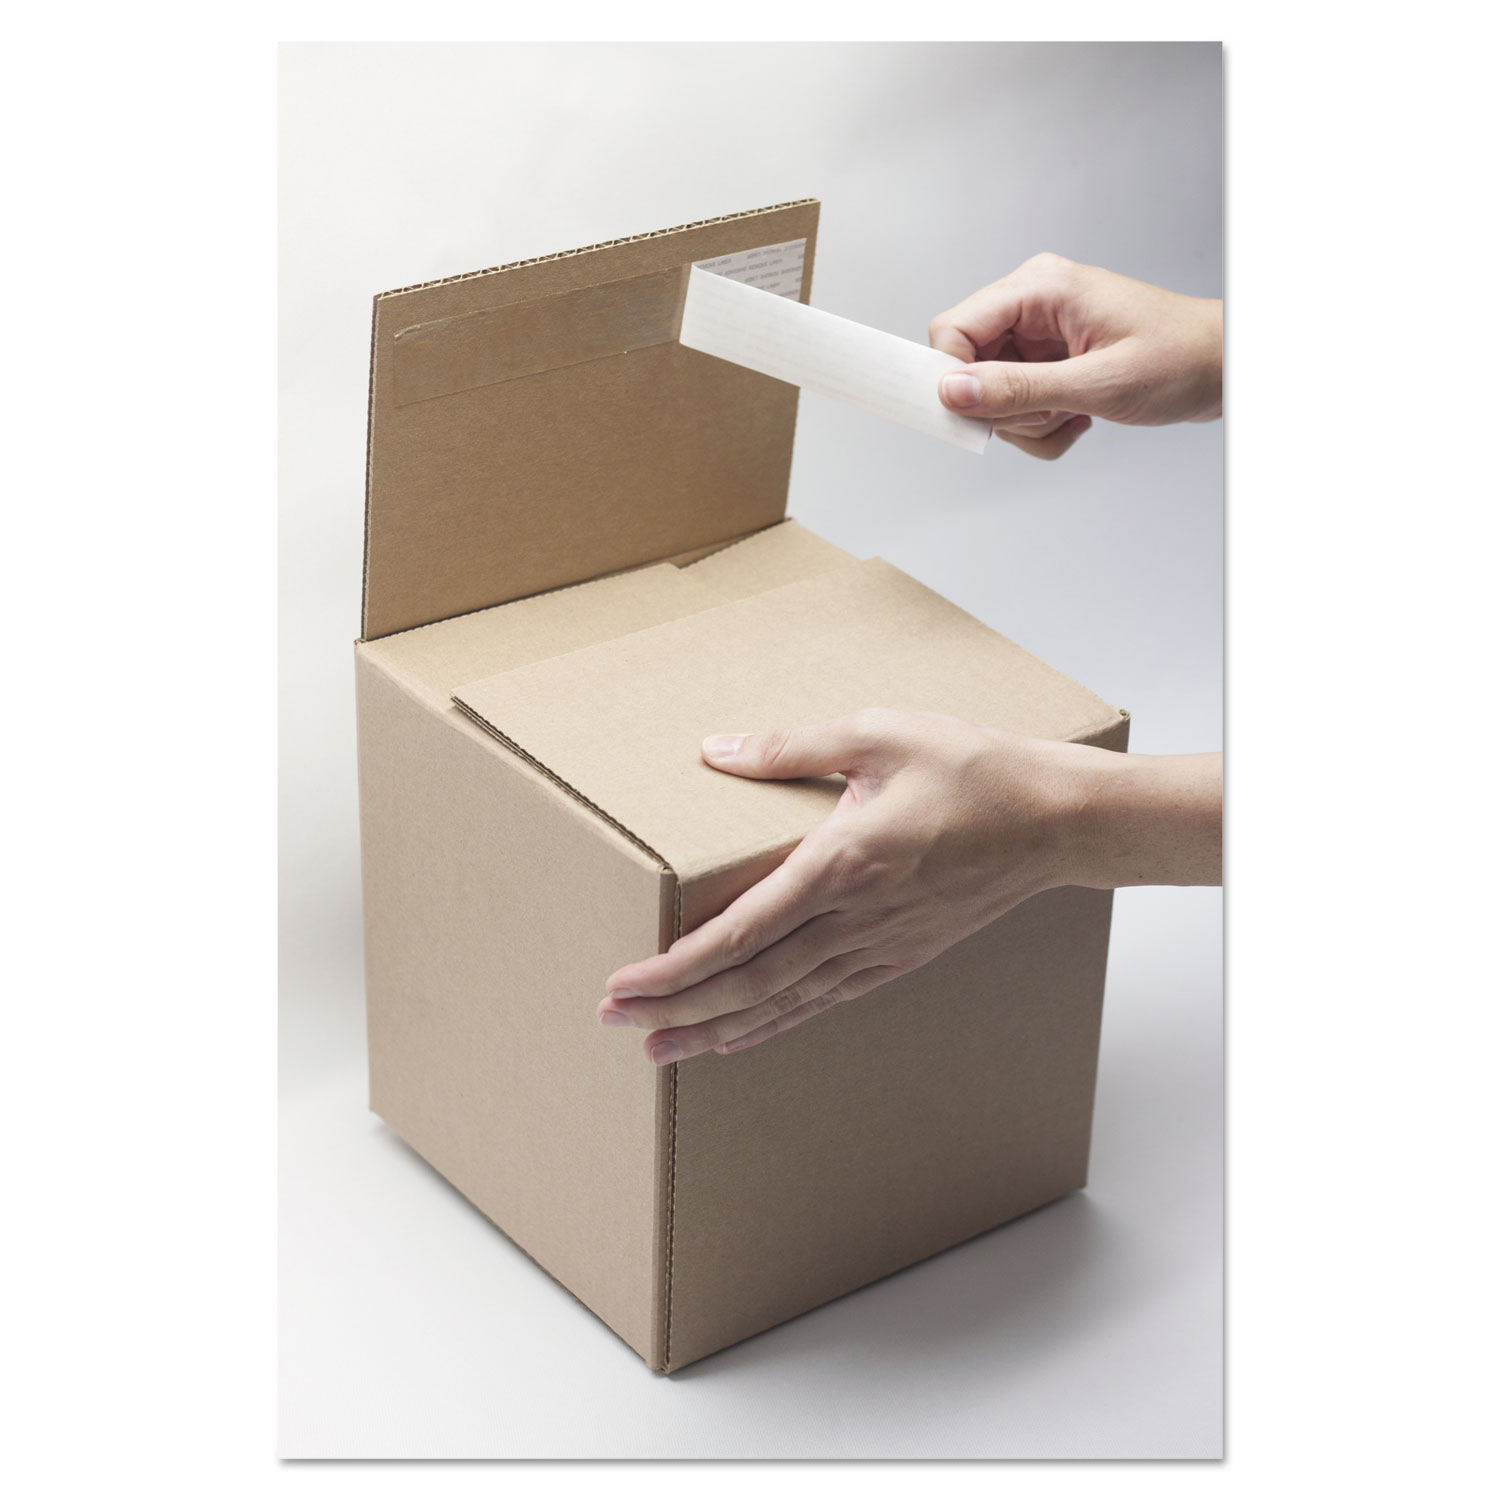 Self-Sealing Shipping Boxes, 10l x 8w x 8h, Brown Kraft, 8/Carton